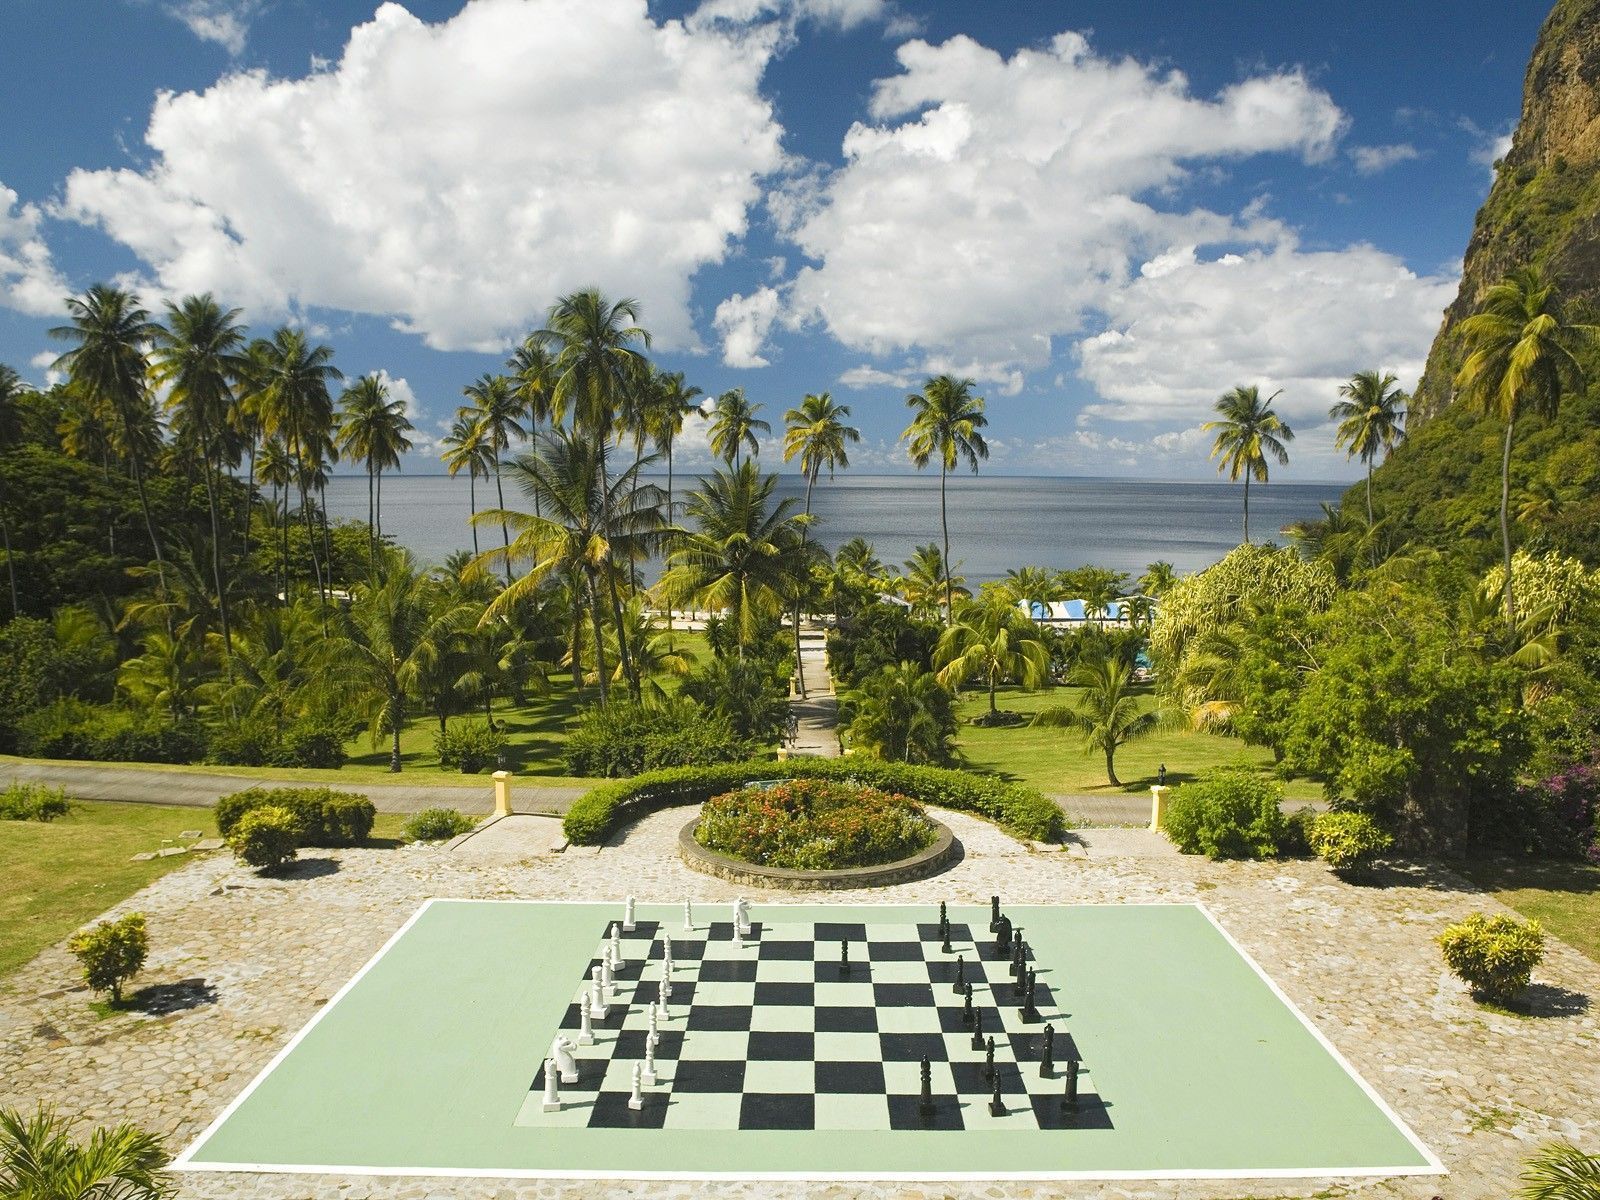 Plantation Lucia chess board wallpaper 1600x1200 59198